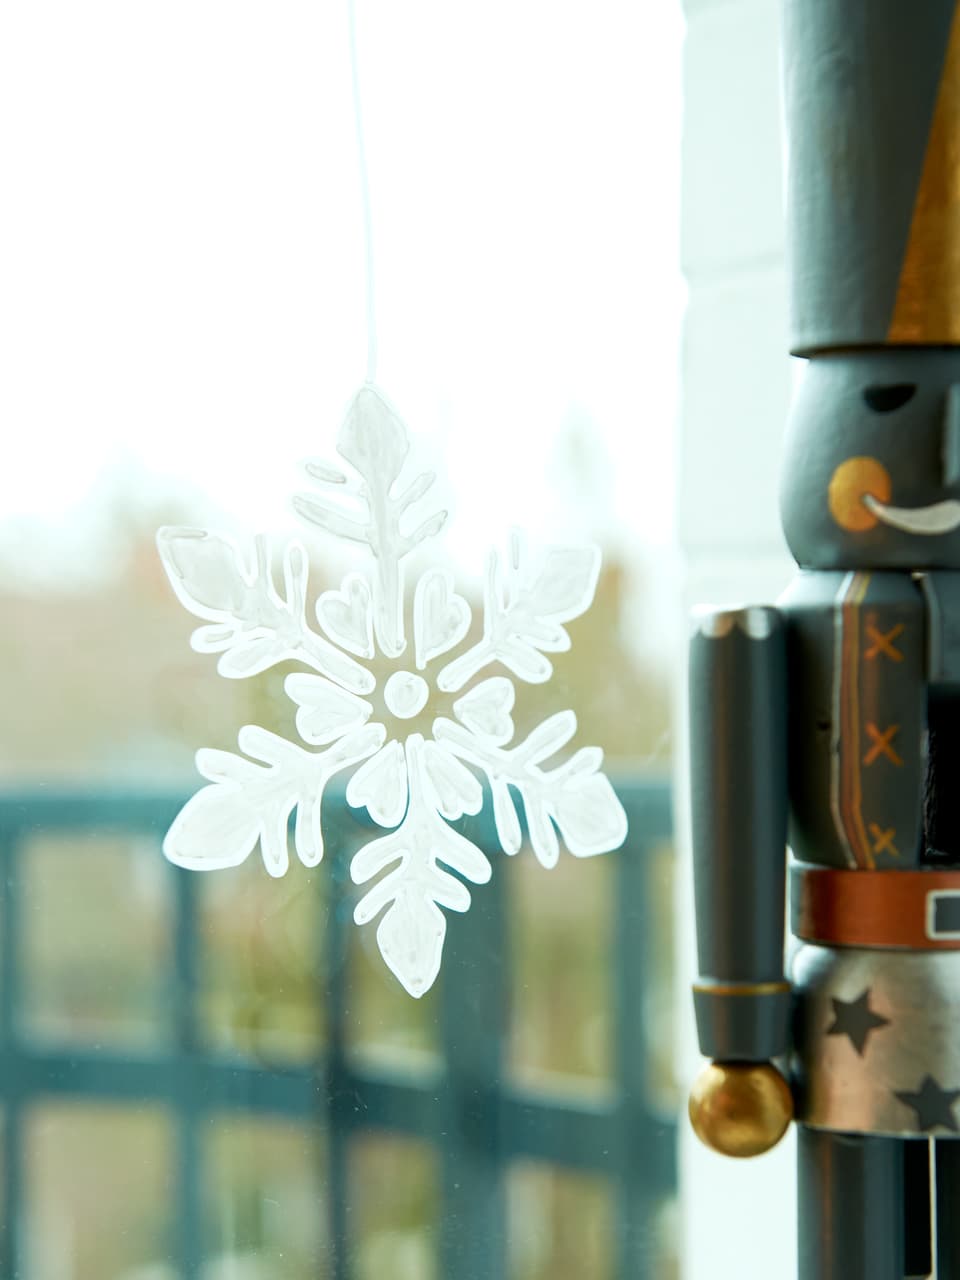 Ein zartes Schneeflockenornament, mit präziser Gestaltung mit dem edding 4085 Kreidemarker aus einem edding Kreidemarker erstellt, hängt neben einem verschwommenen Nussknacker an einem Fenster.